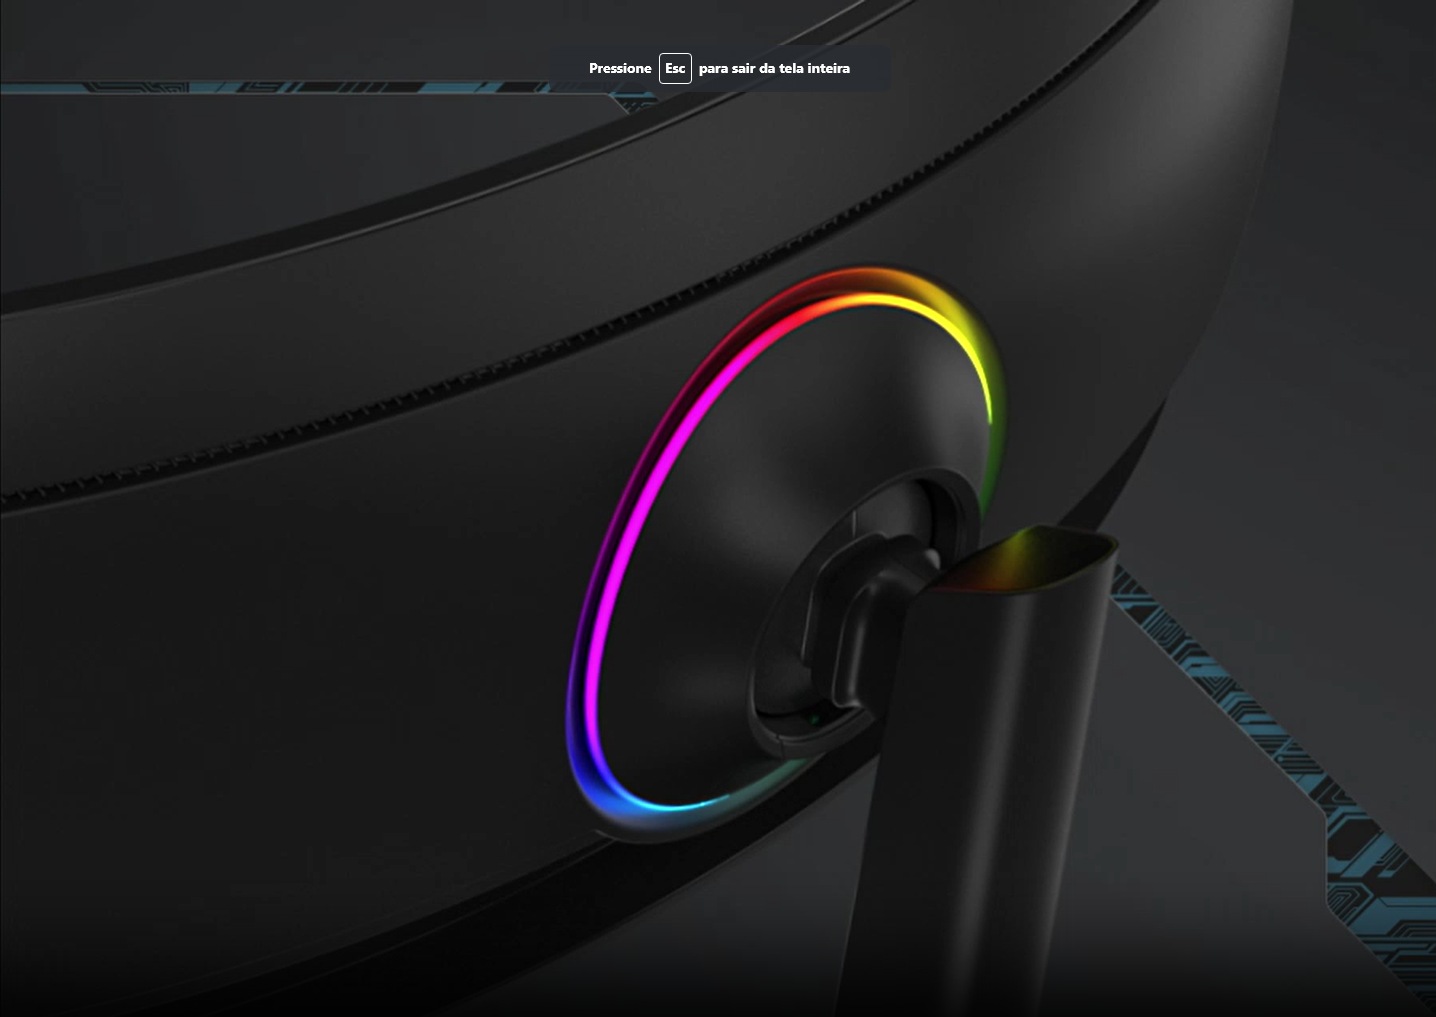 La parte posterior de un monitor Odyssey se muestra parado sobre una superficie. En la parte posterior del monitor se muestra un anillo multicolor brillante.